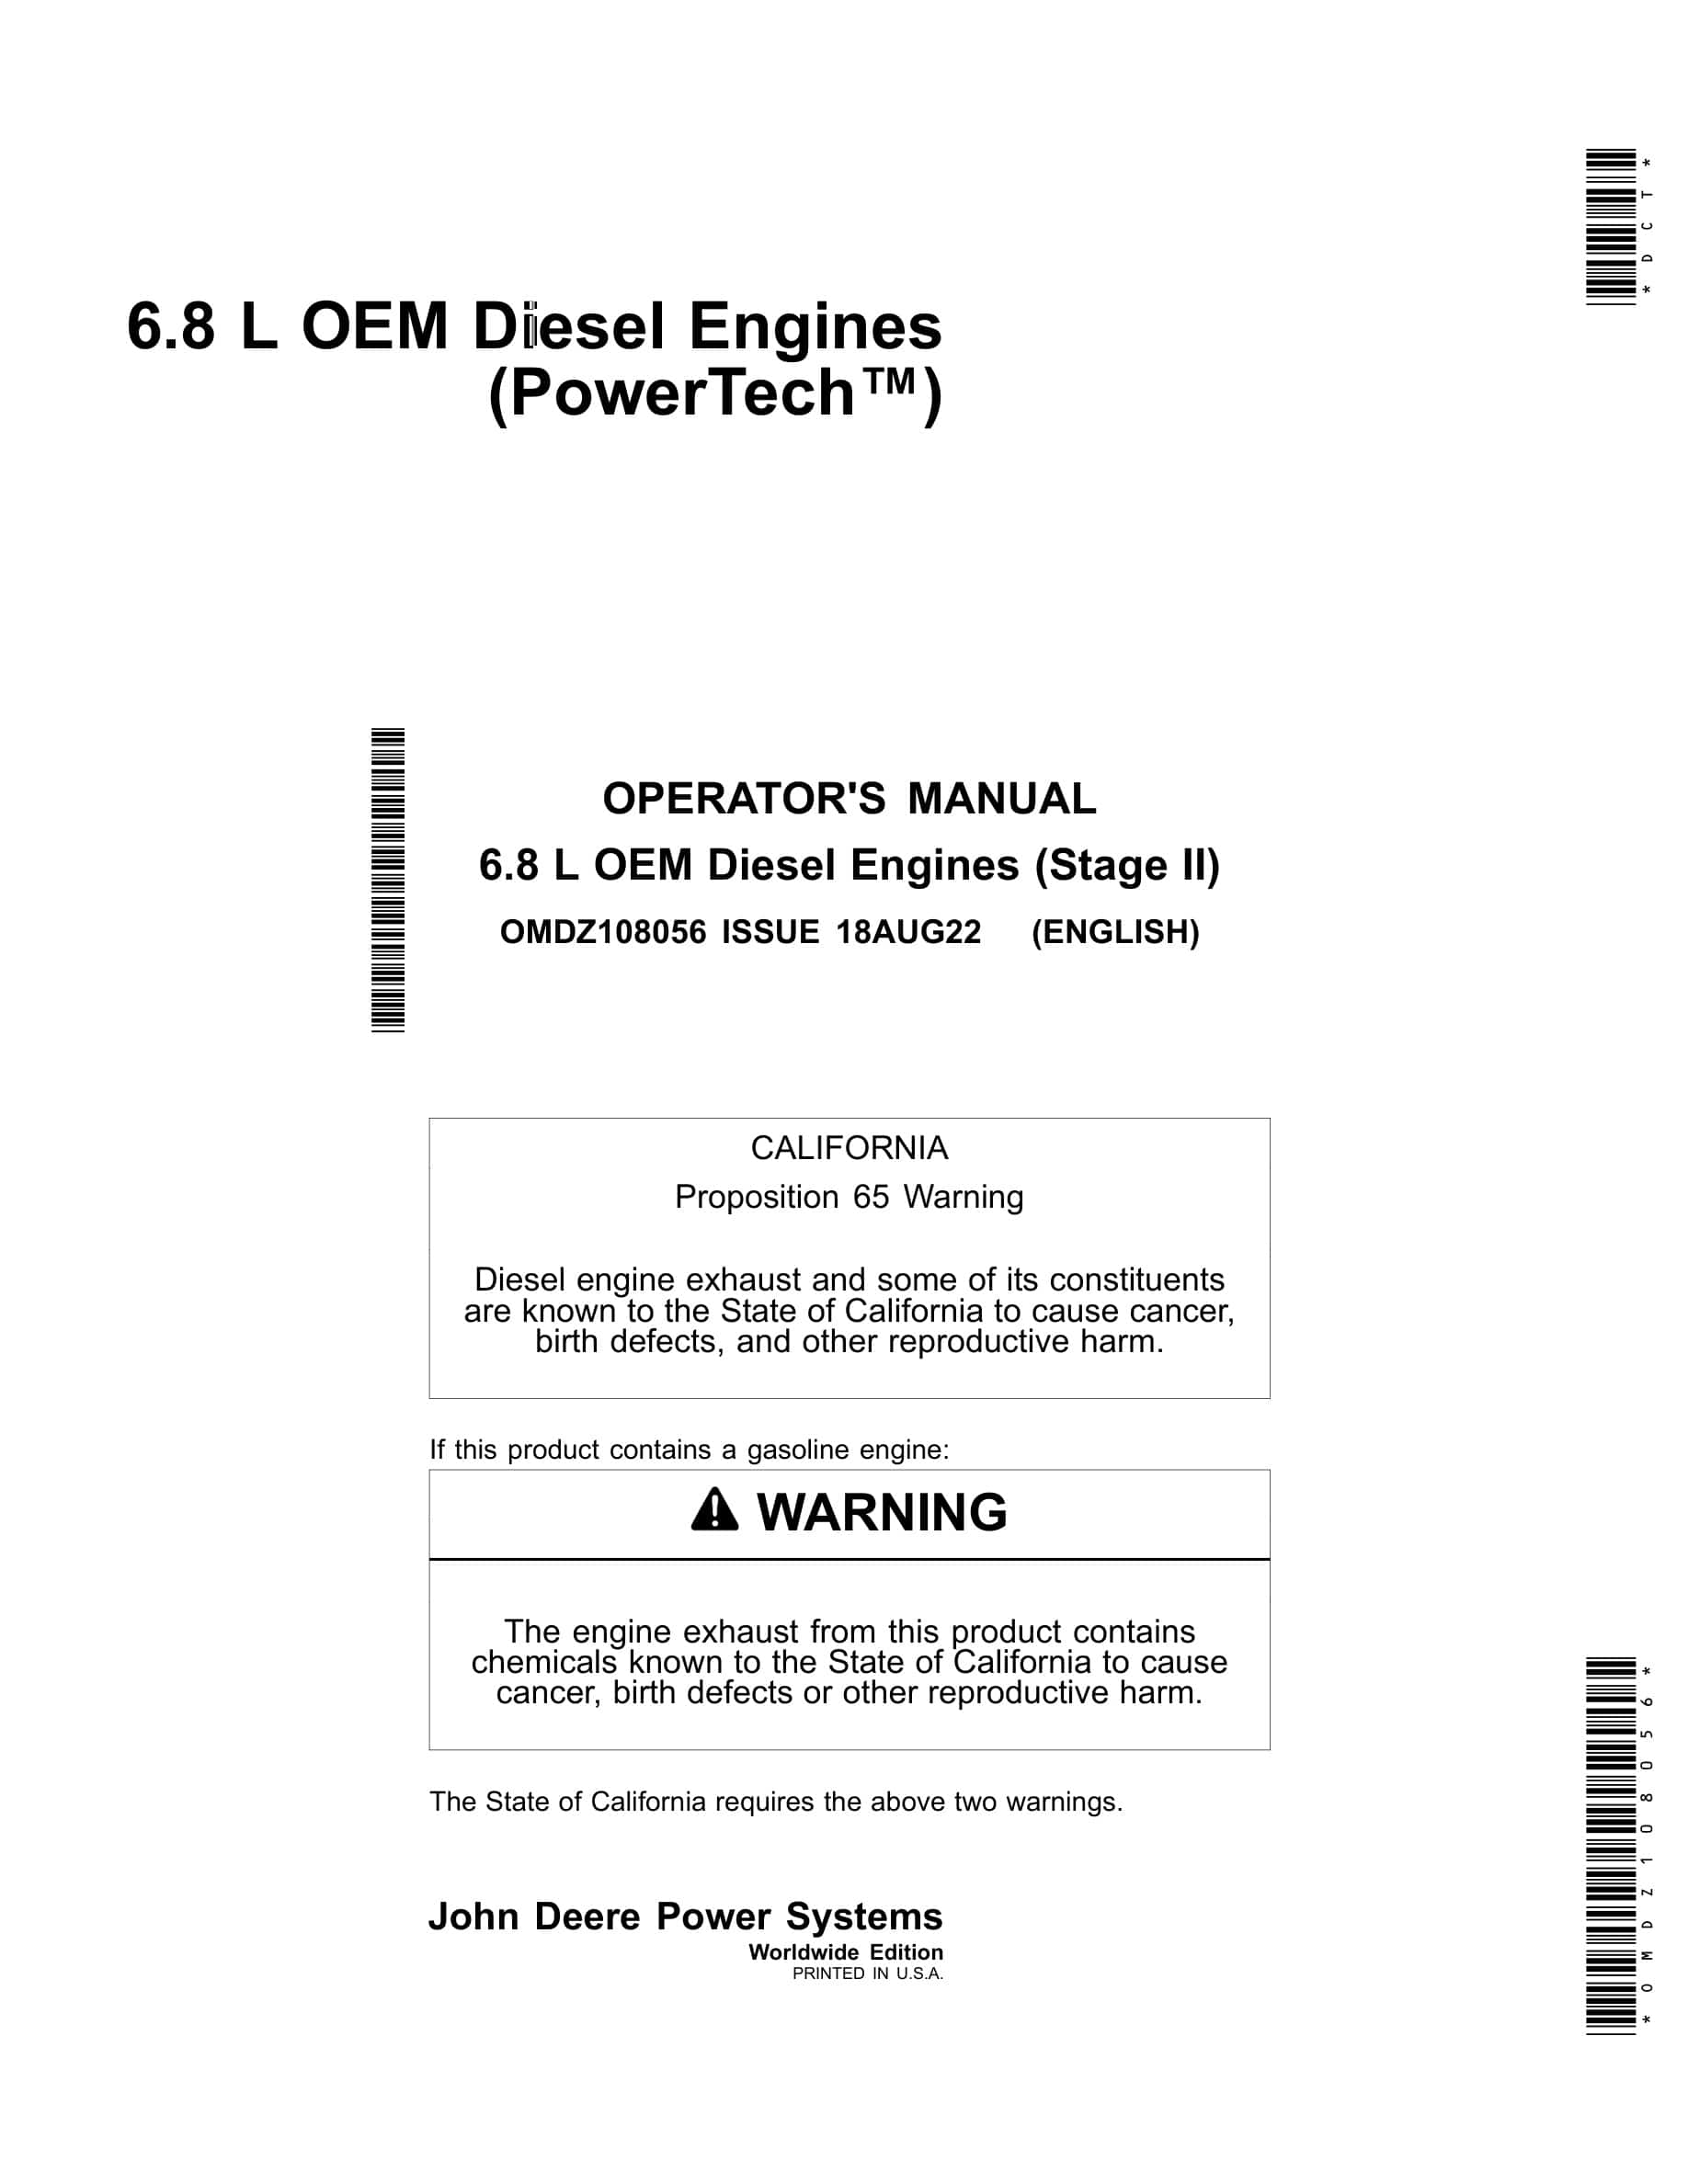 John Deere PowerTech 6.8 L OEM Diesel Engines (Stage II) Operator Manual OMDZ108056-1